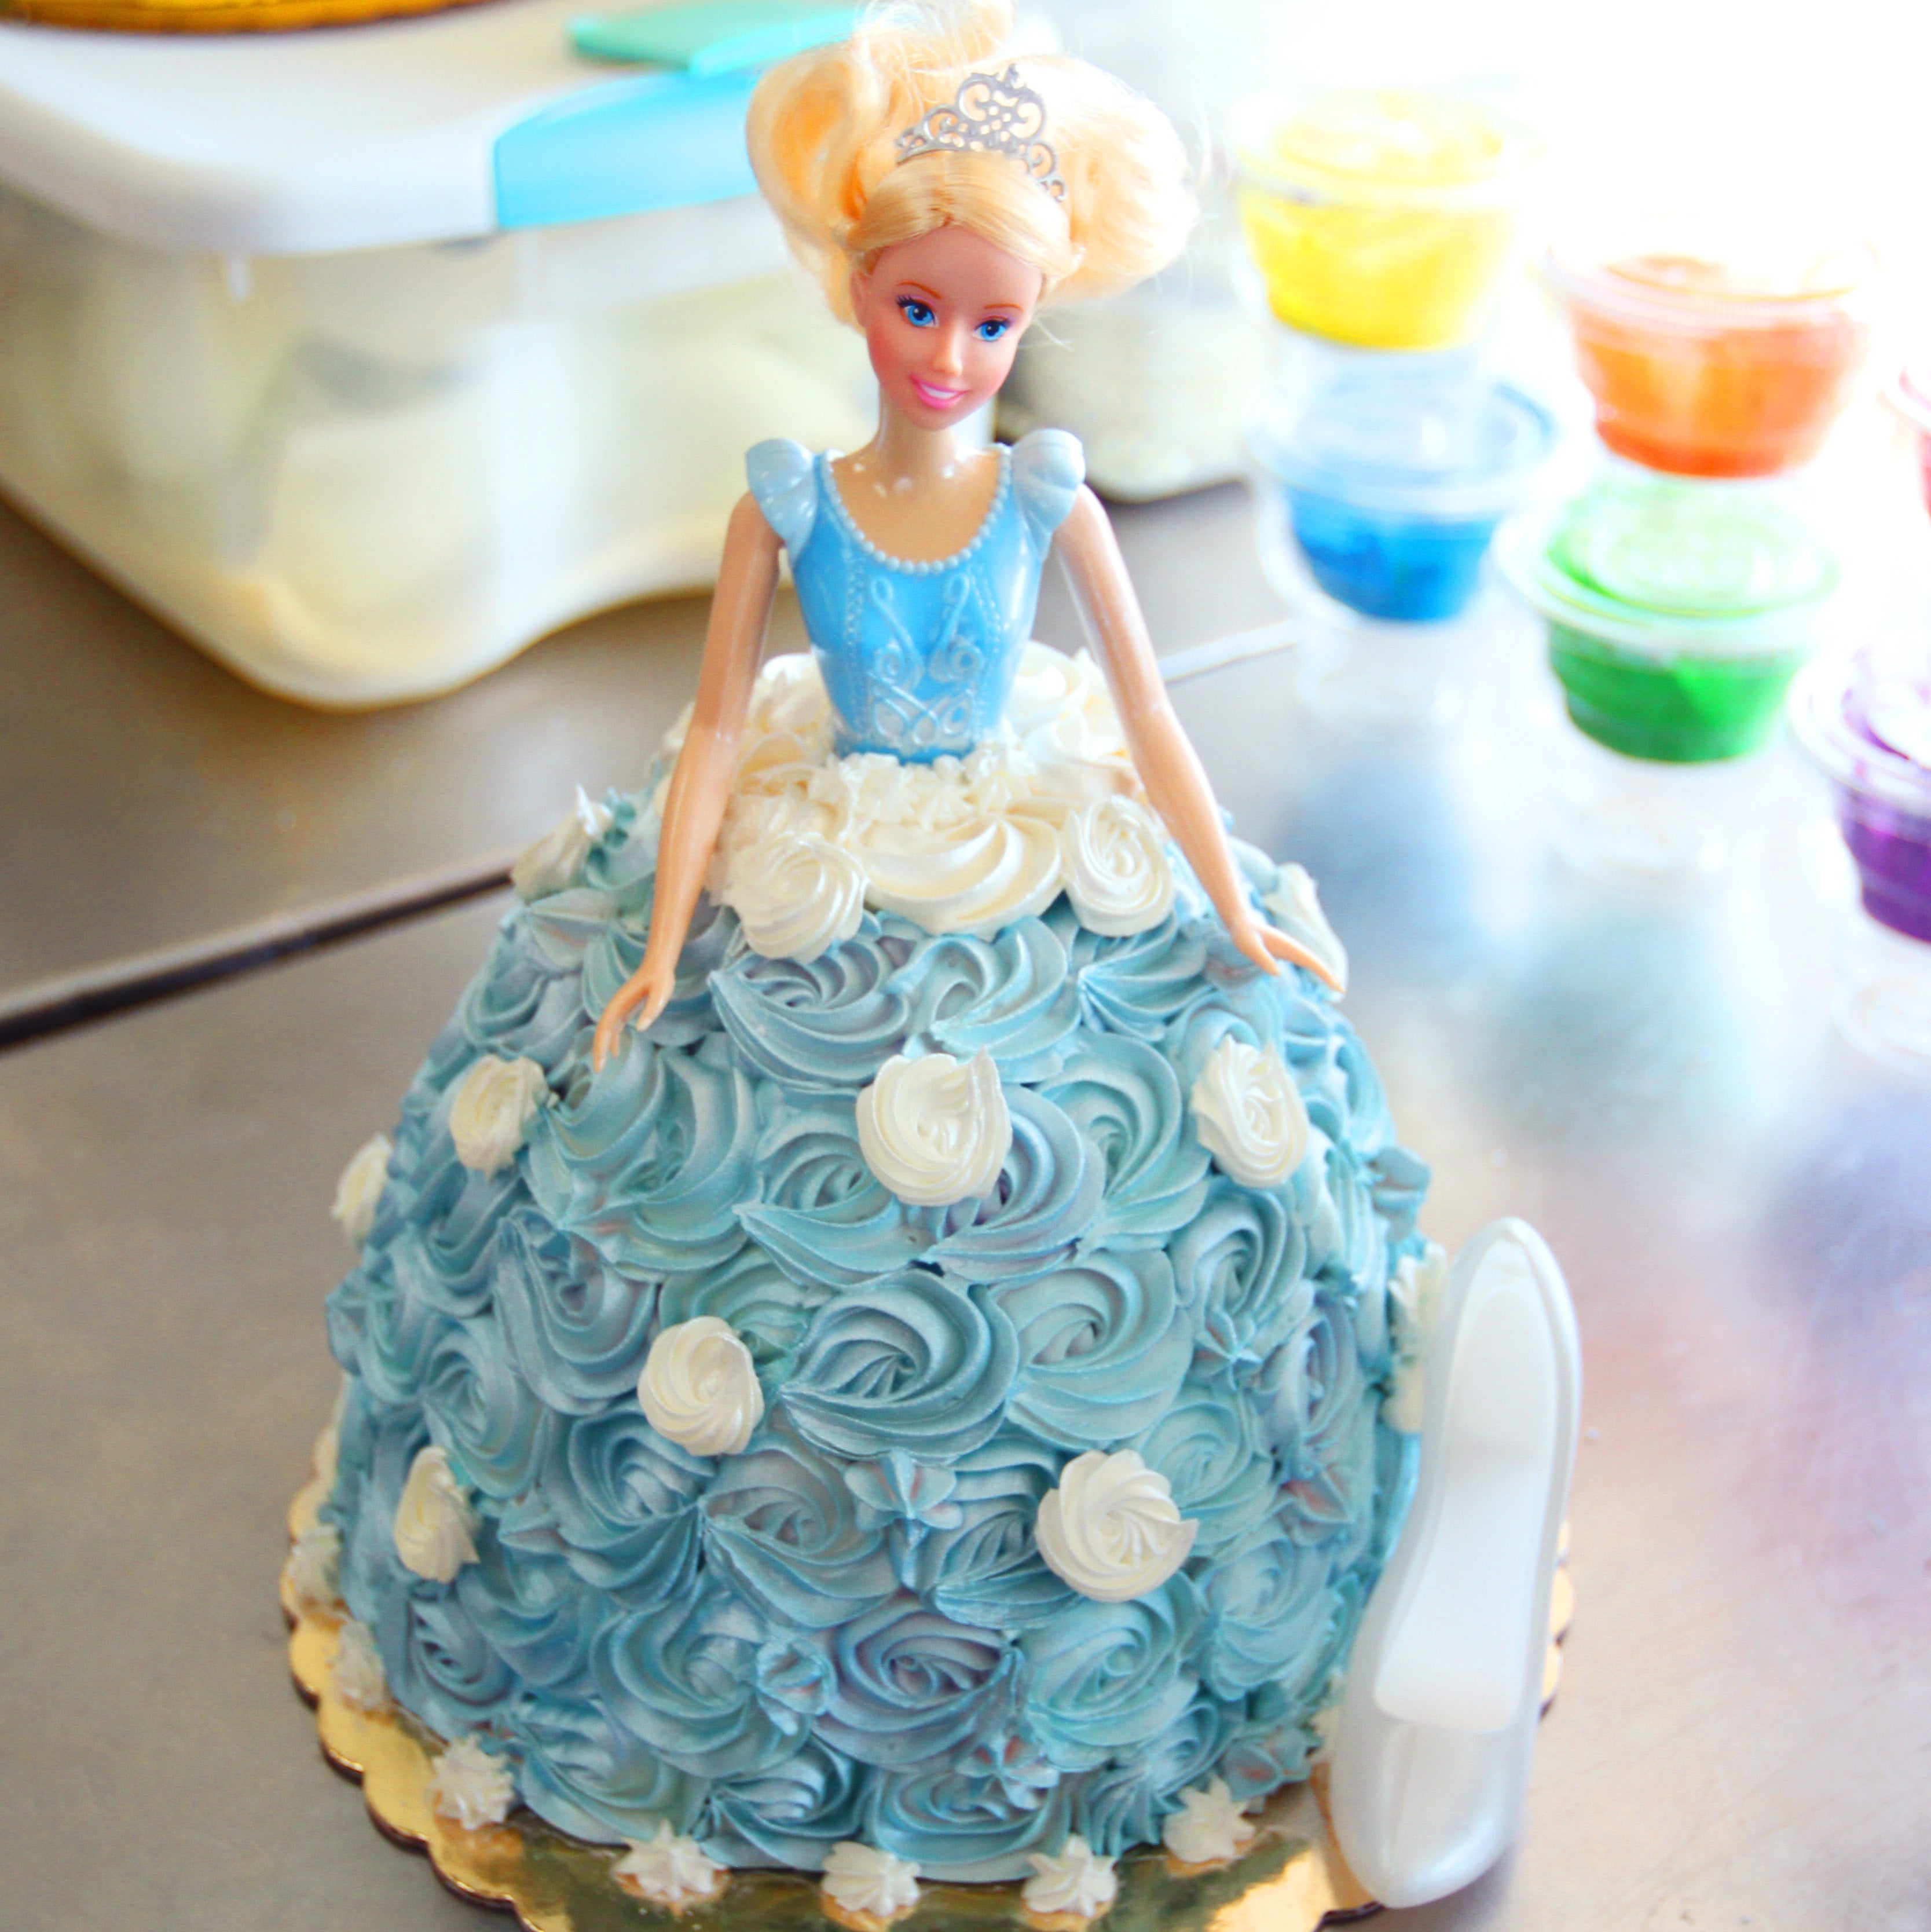 Fondant Princess Cake Tutorial - onecreativemommy.com